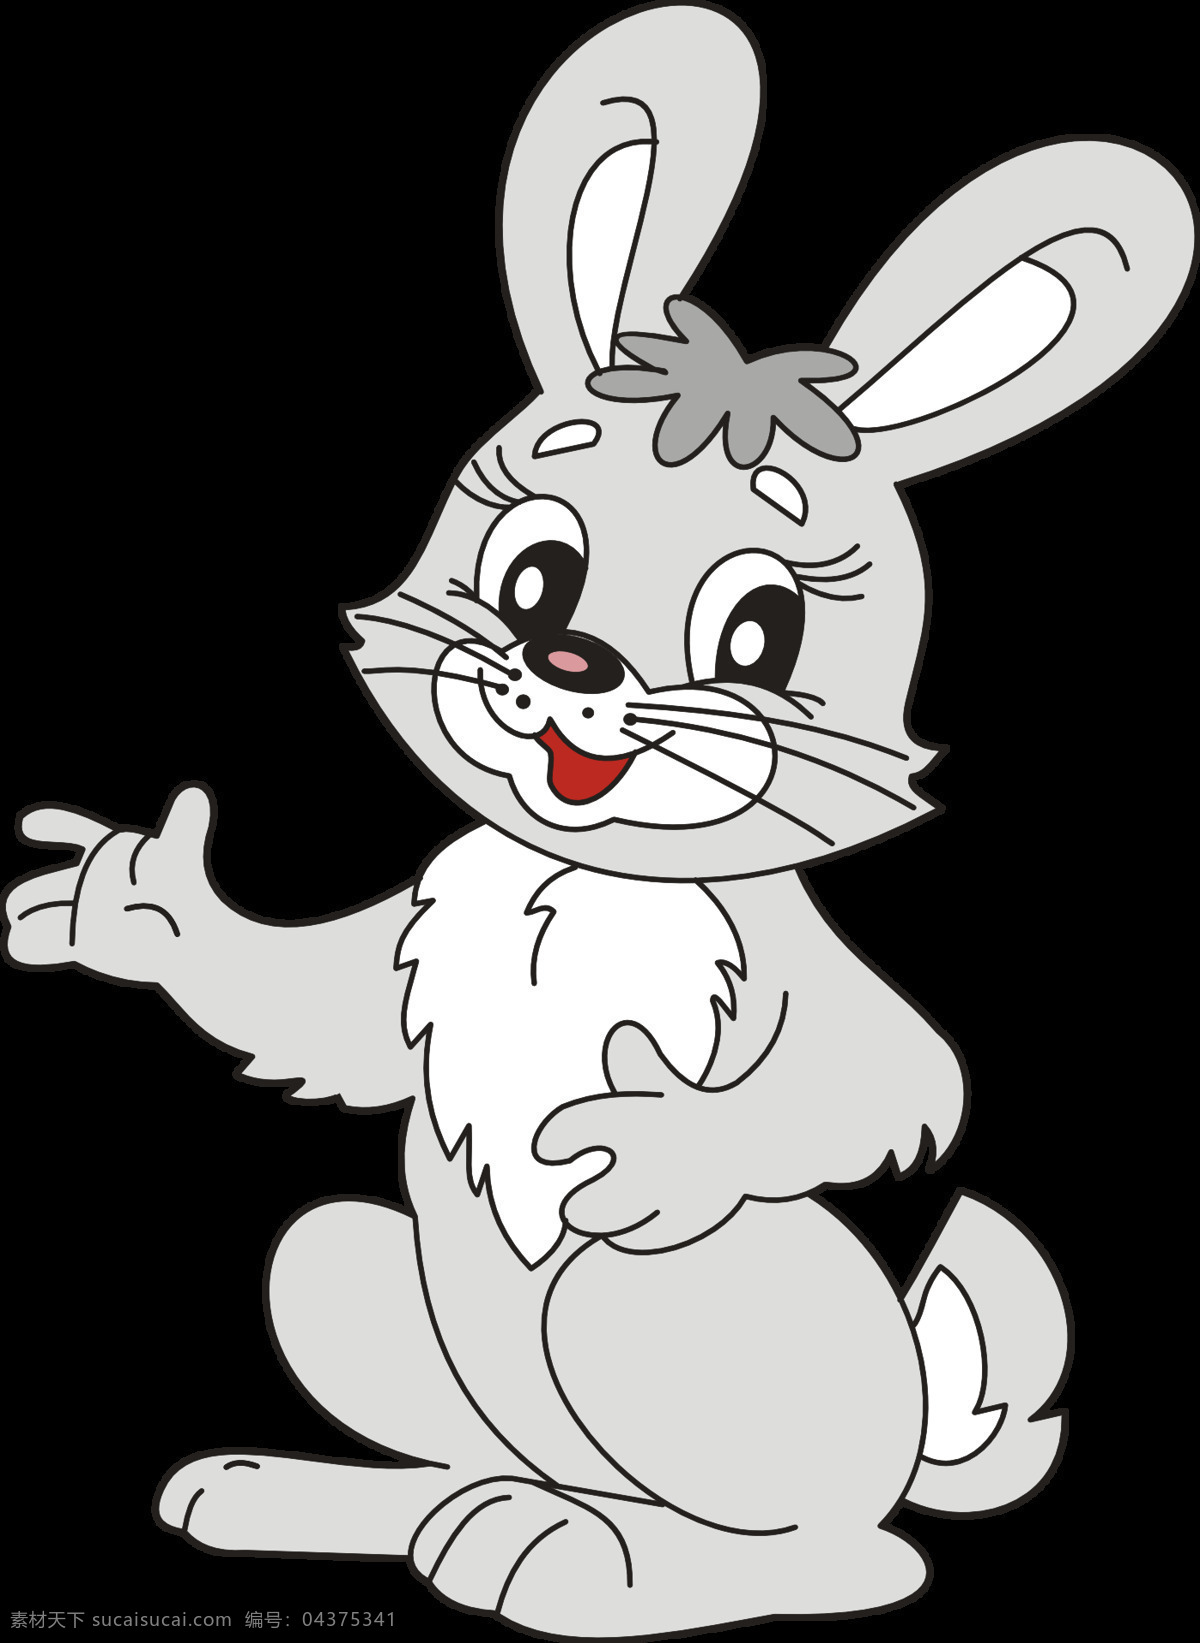 小灰兔 动物 小白兔 可爱 乖巧 兔兔 卡通 漫画 动漫动画 生物世界 家禽家畜